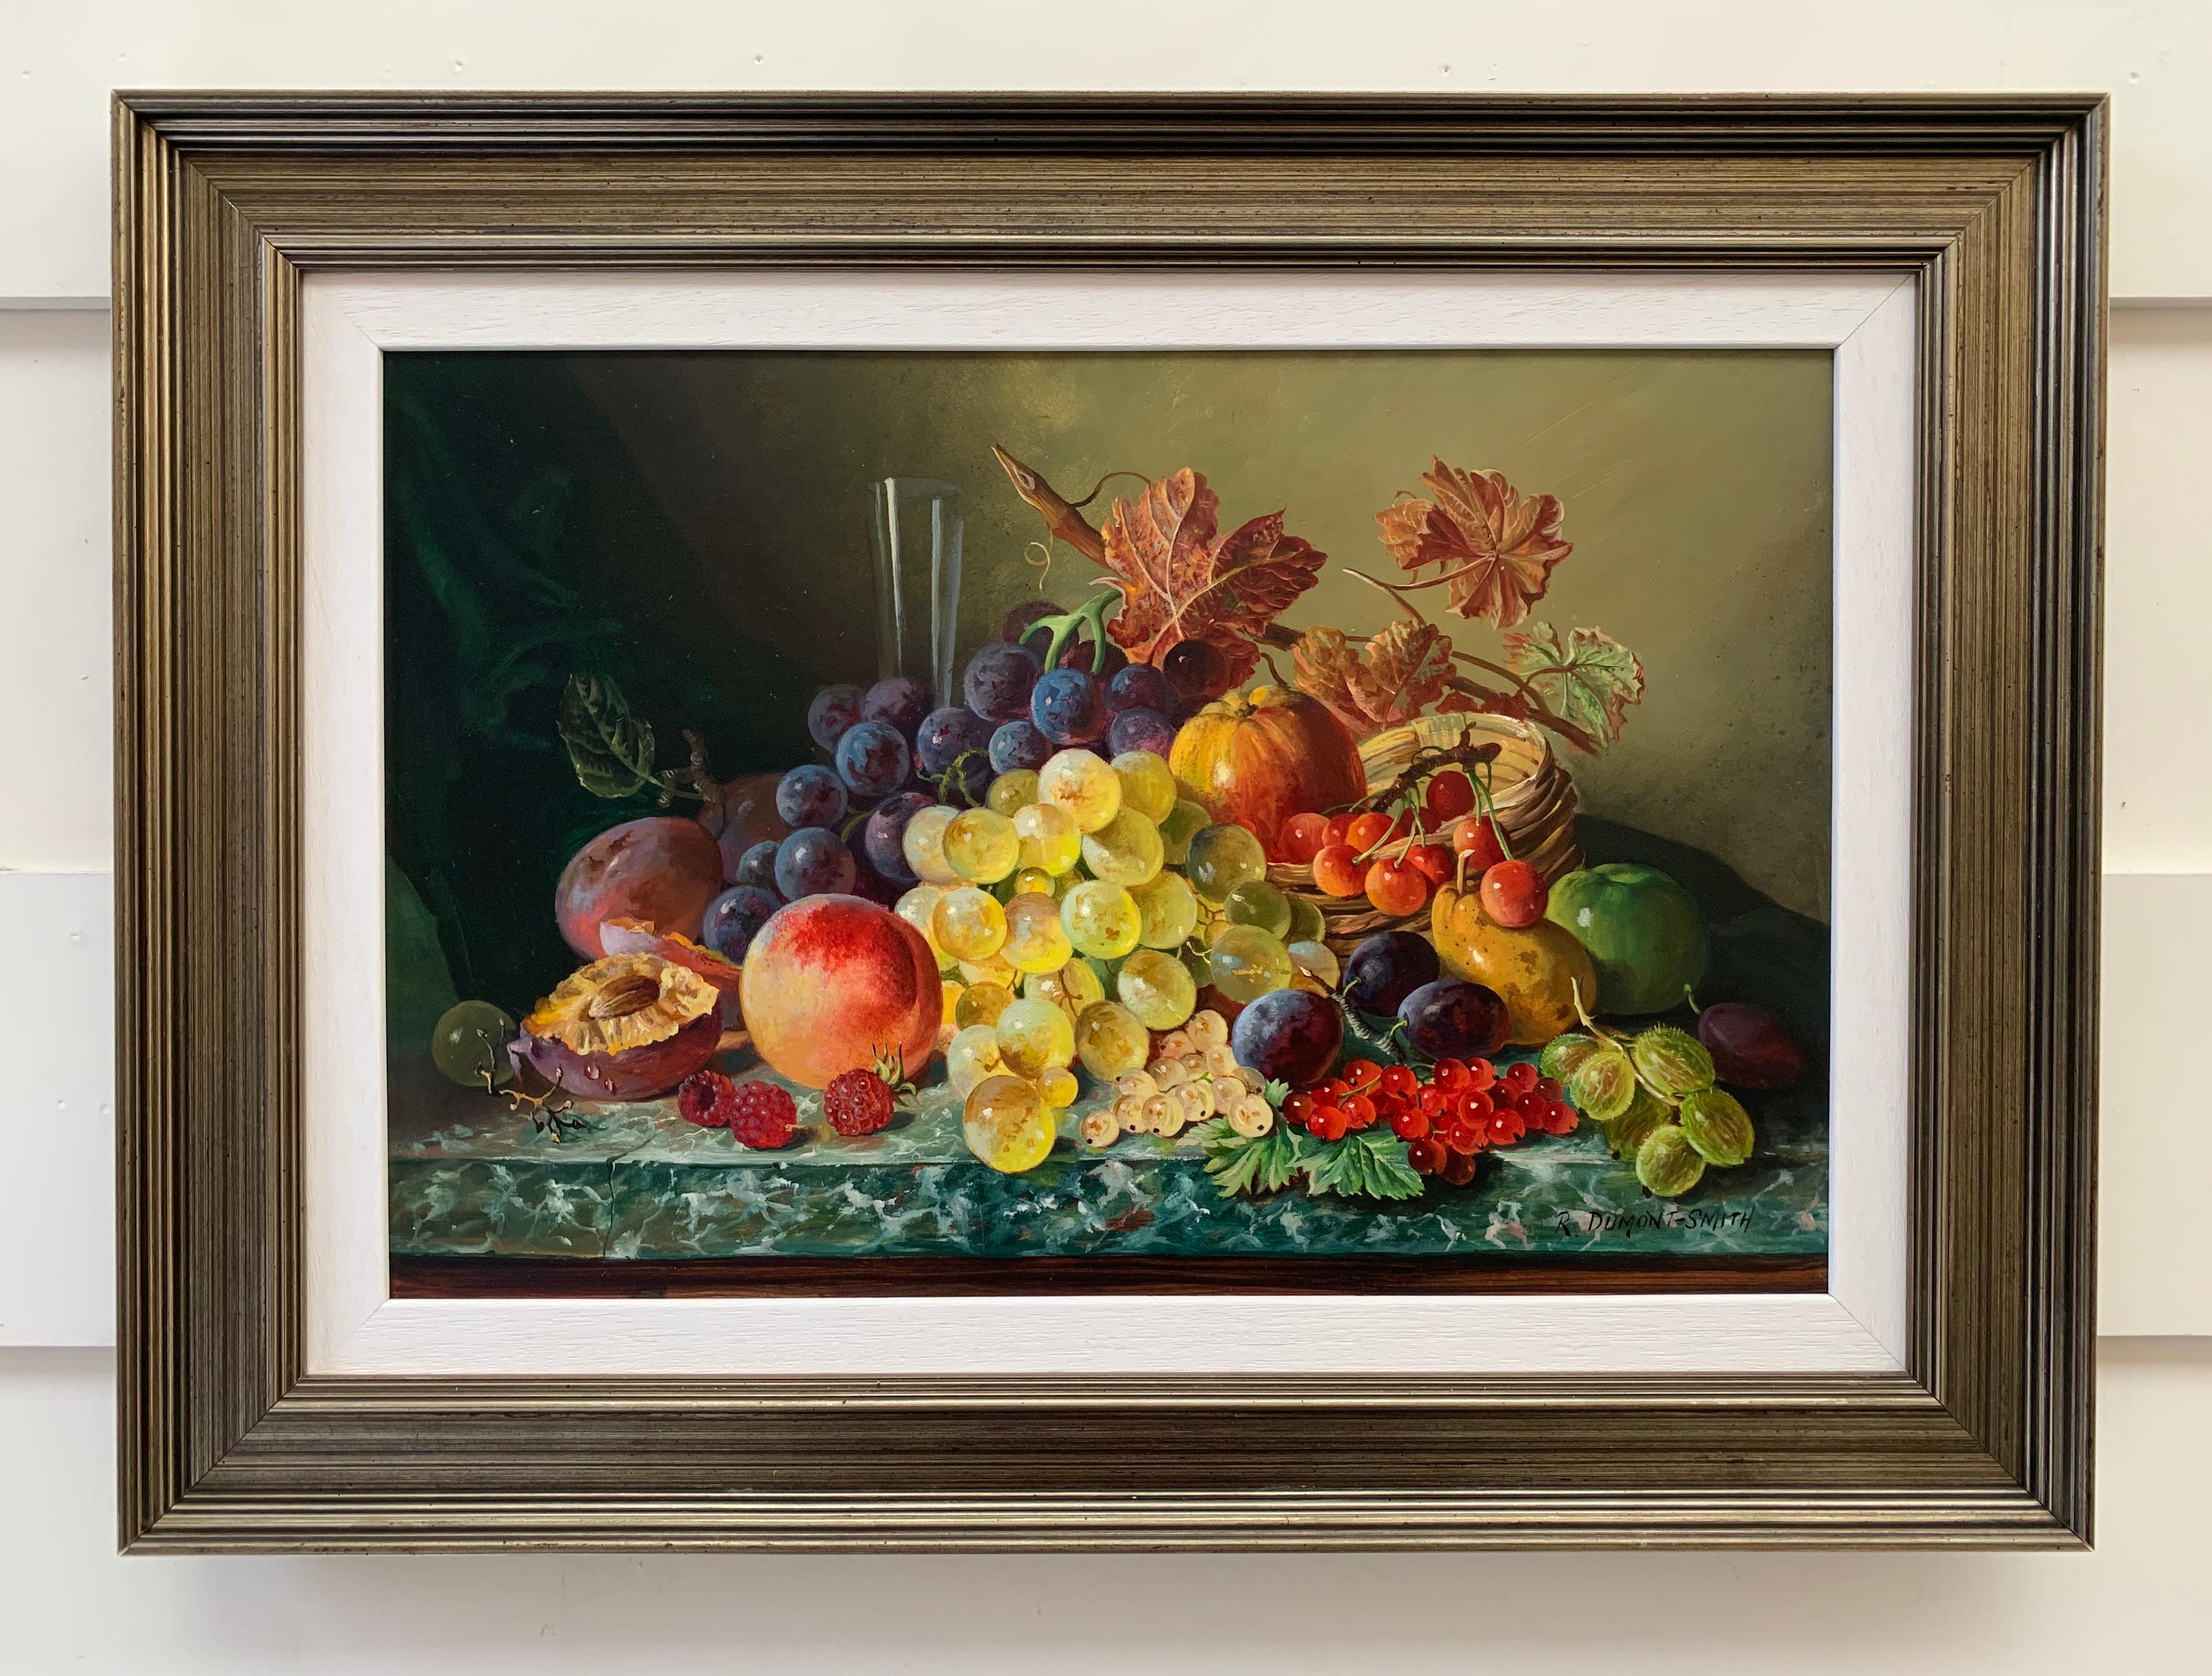 Schönes:: farbenfrohes Ölgemälde eines berühmten britischen Malers von Obst (Realismus), Painting, von Robert Dumont-Smith